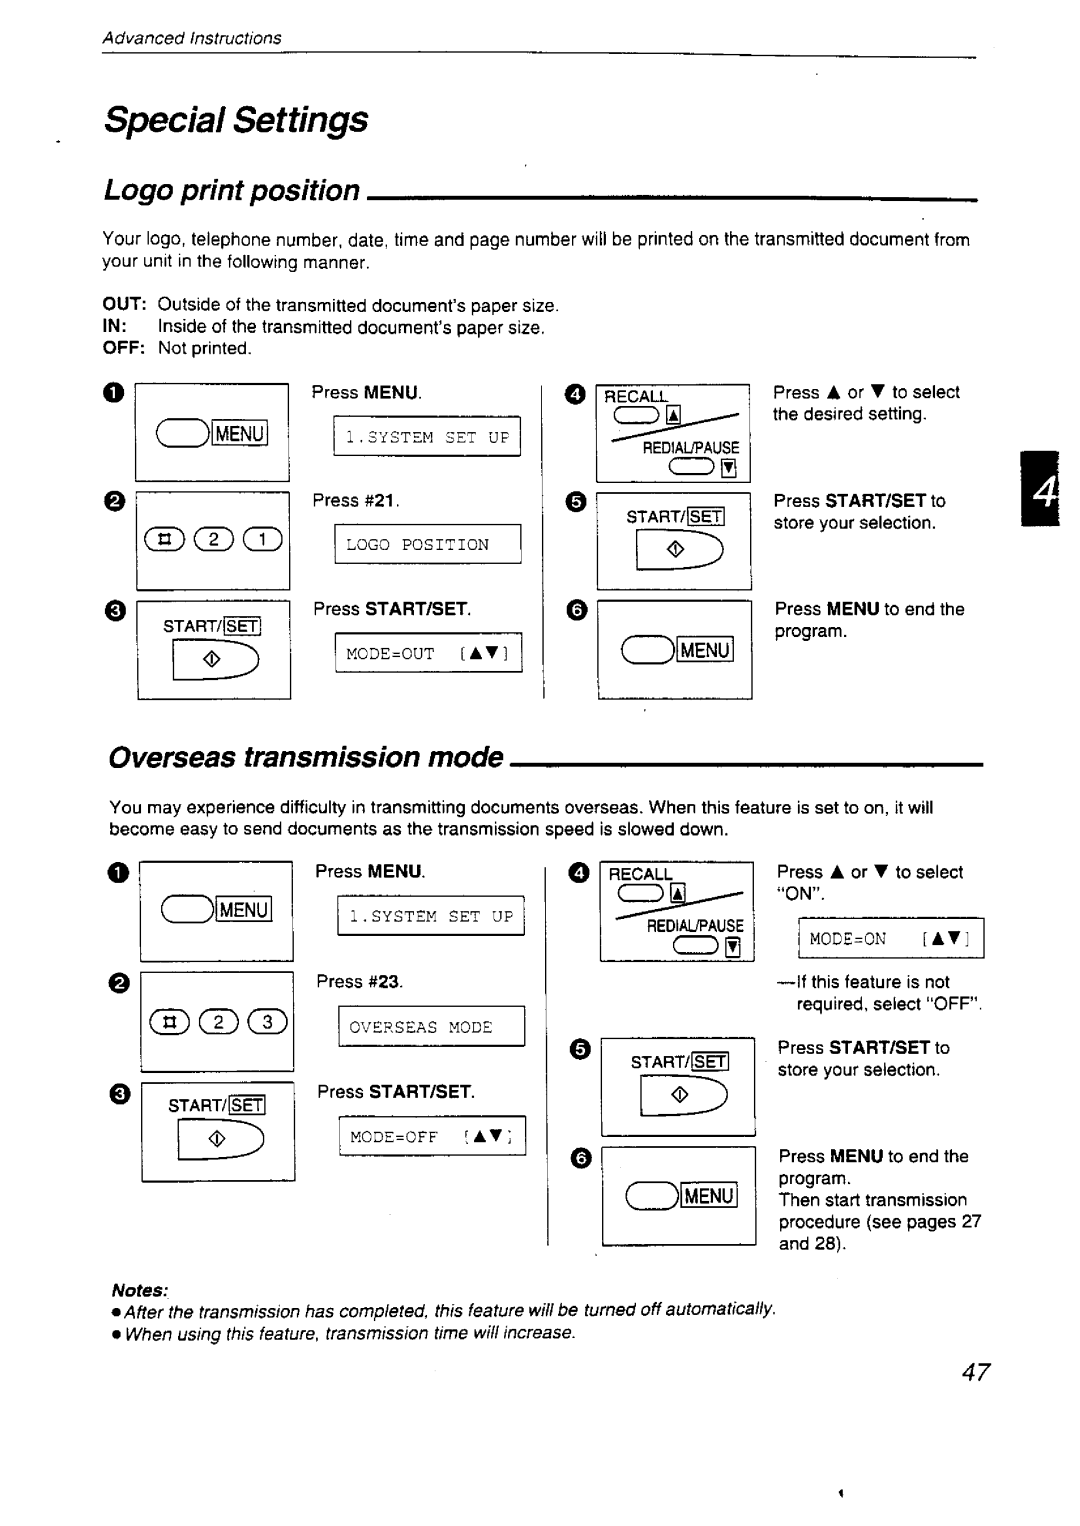 Panasonic KX-F2750NZ, KX-F2710NZ manual 